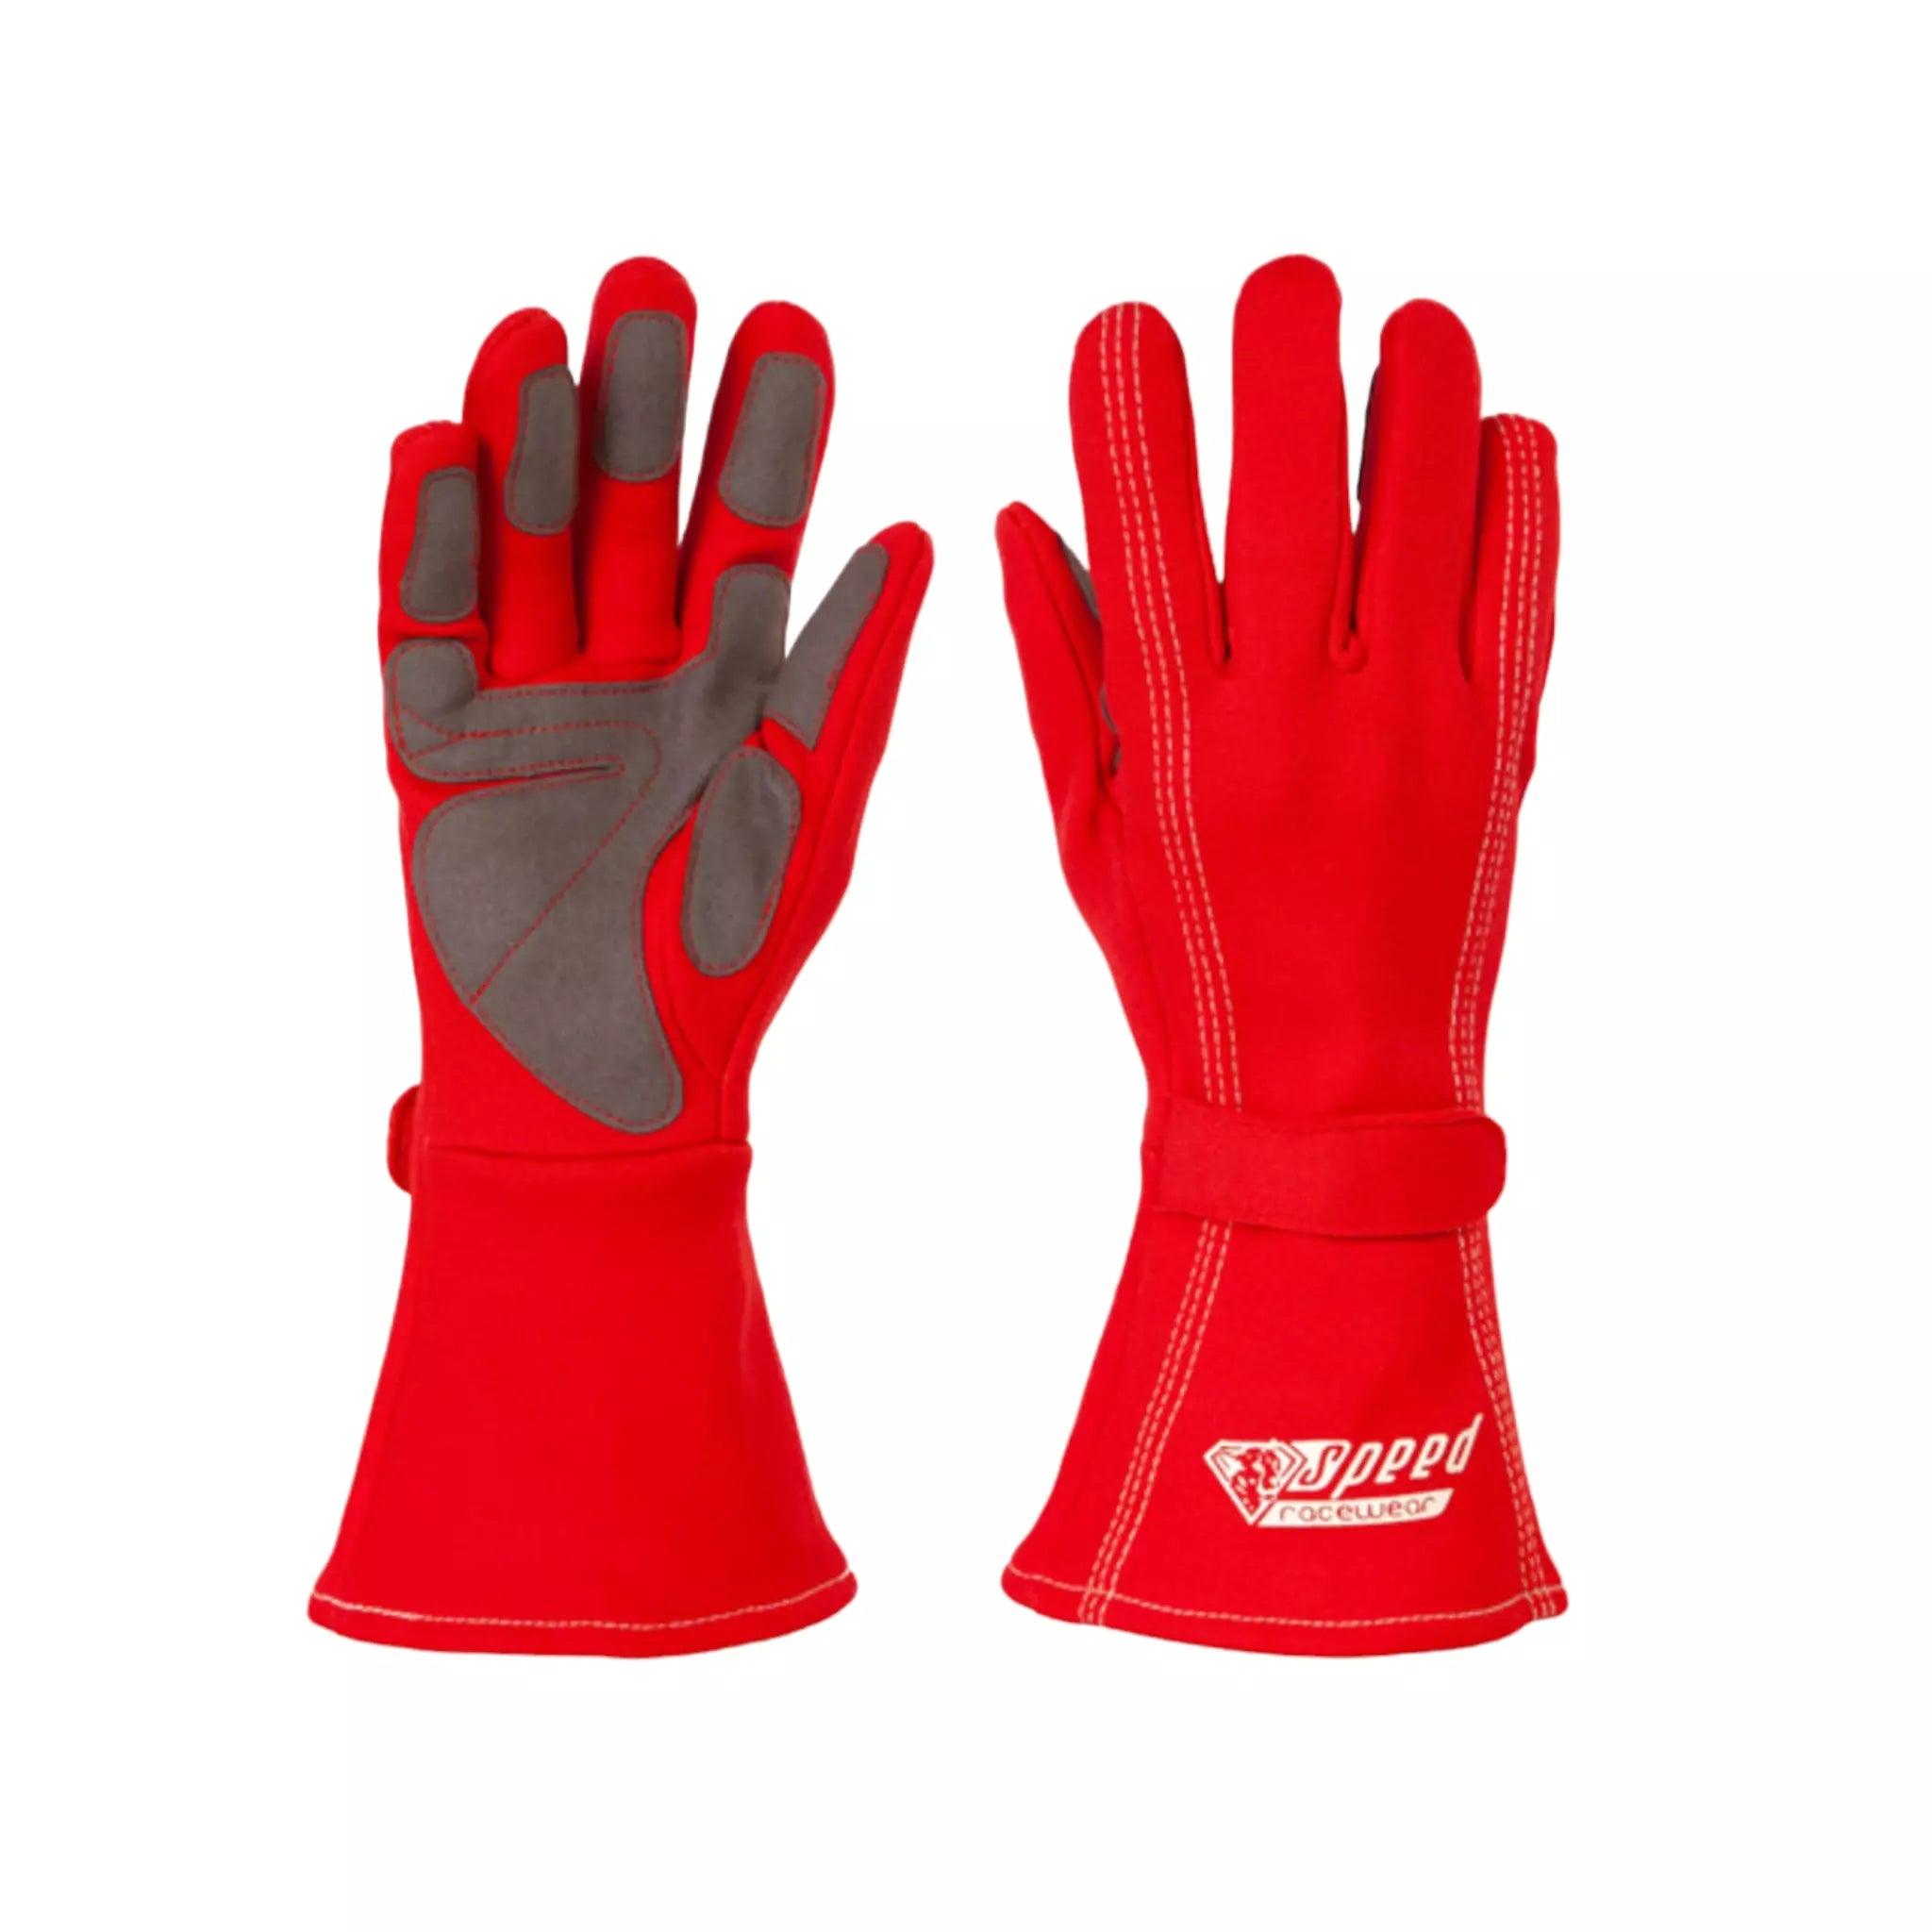 Speed gloves Auckland G-1 Red DASH RACEGEAR